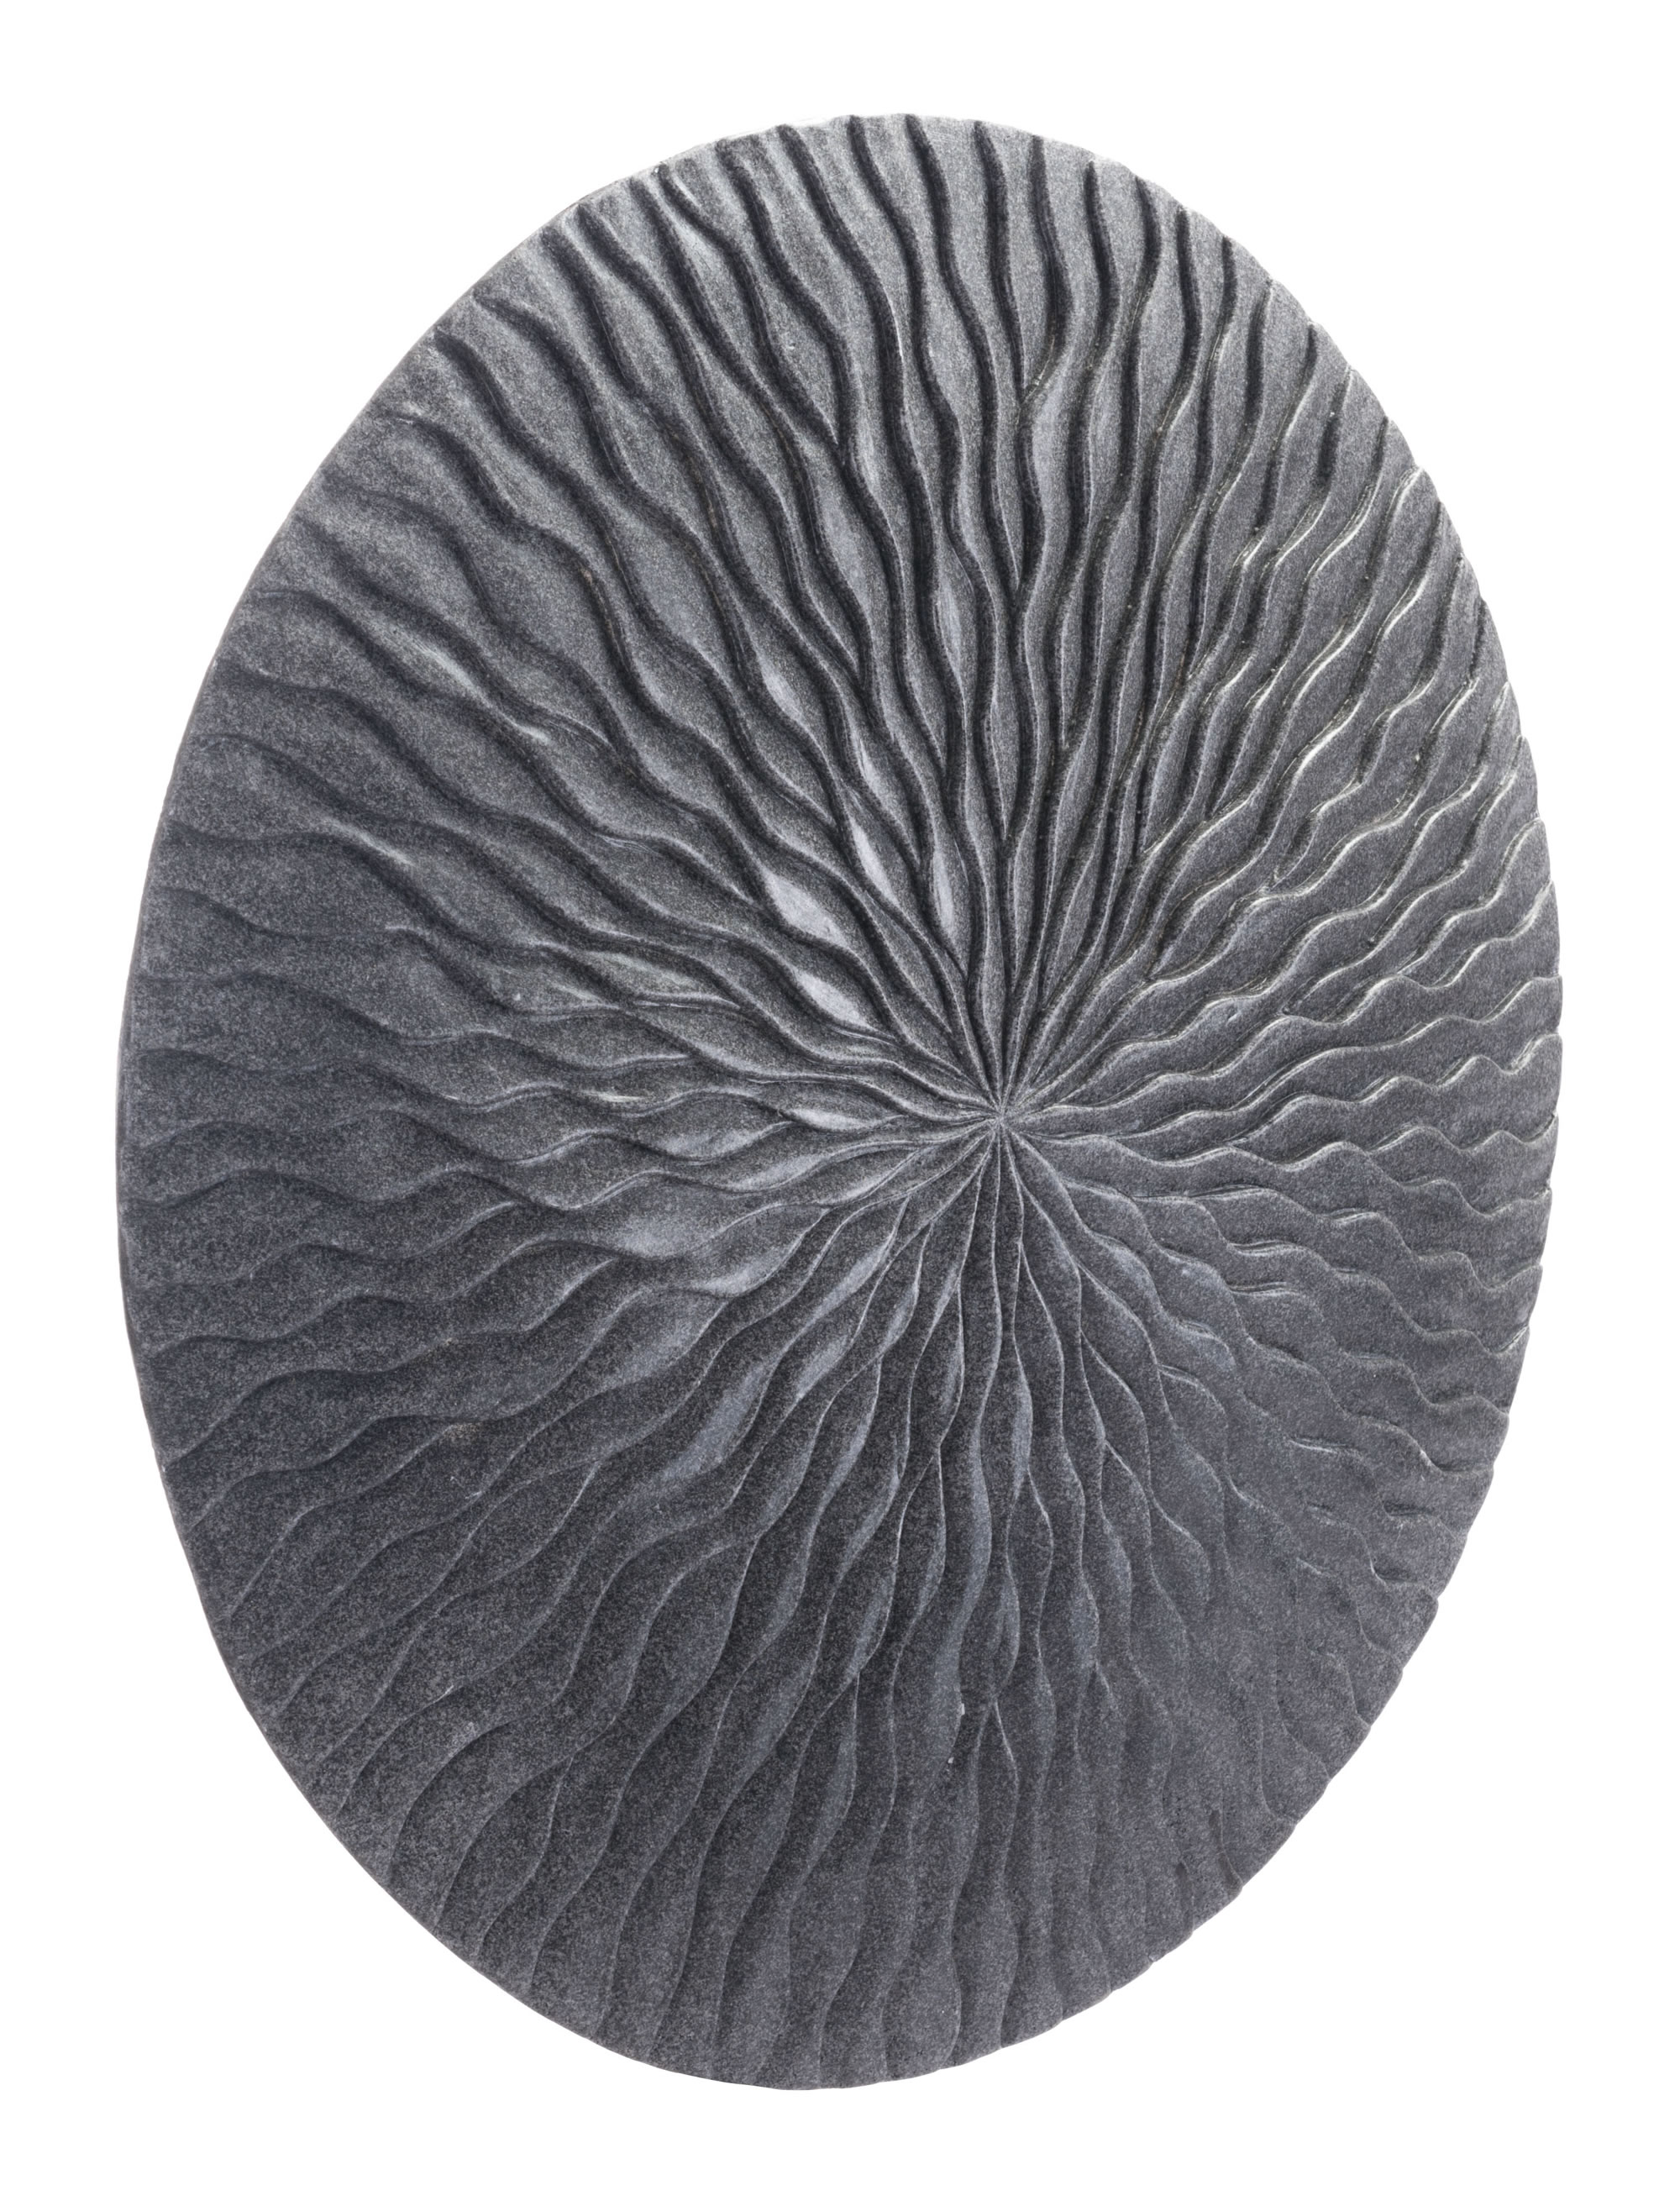 23.3" x 23.3" x 2.8" Dark Gray, Sandstone, Round Wave Large Plaque